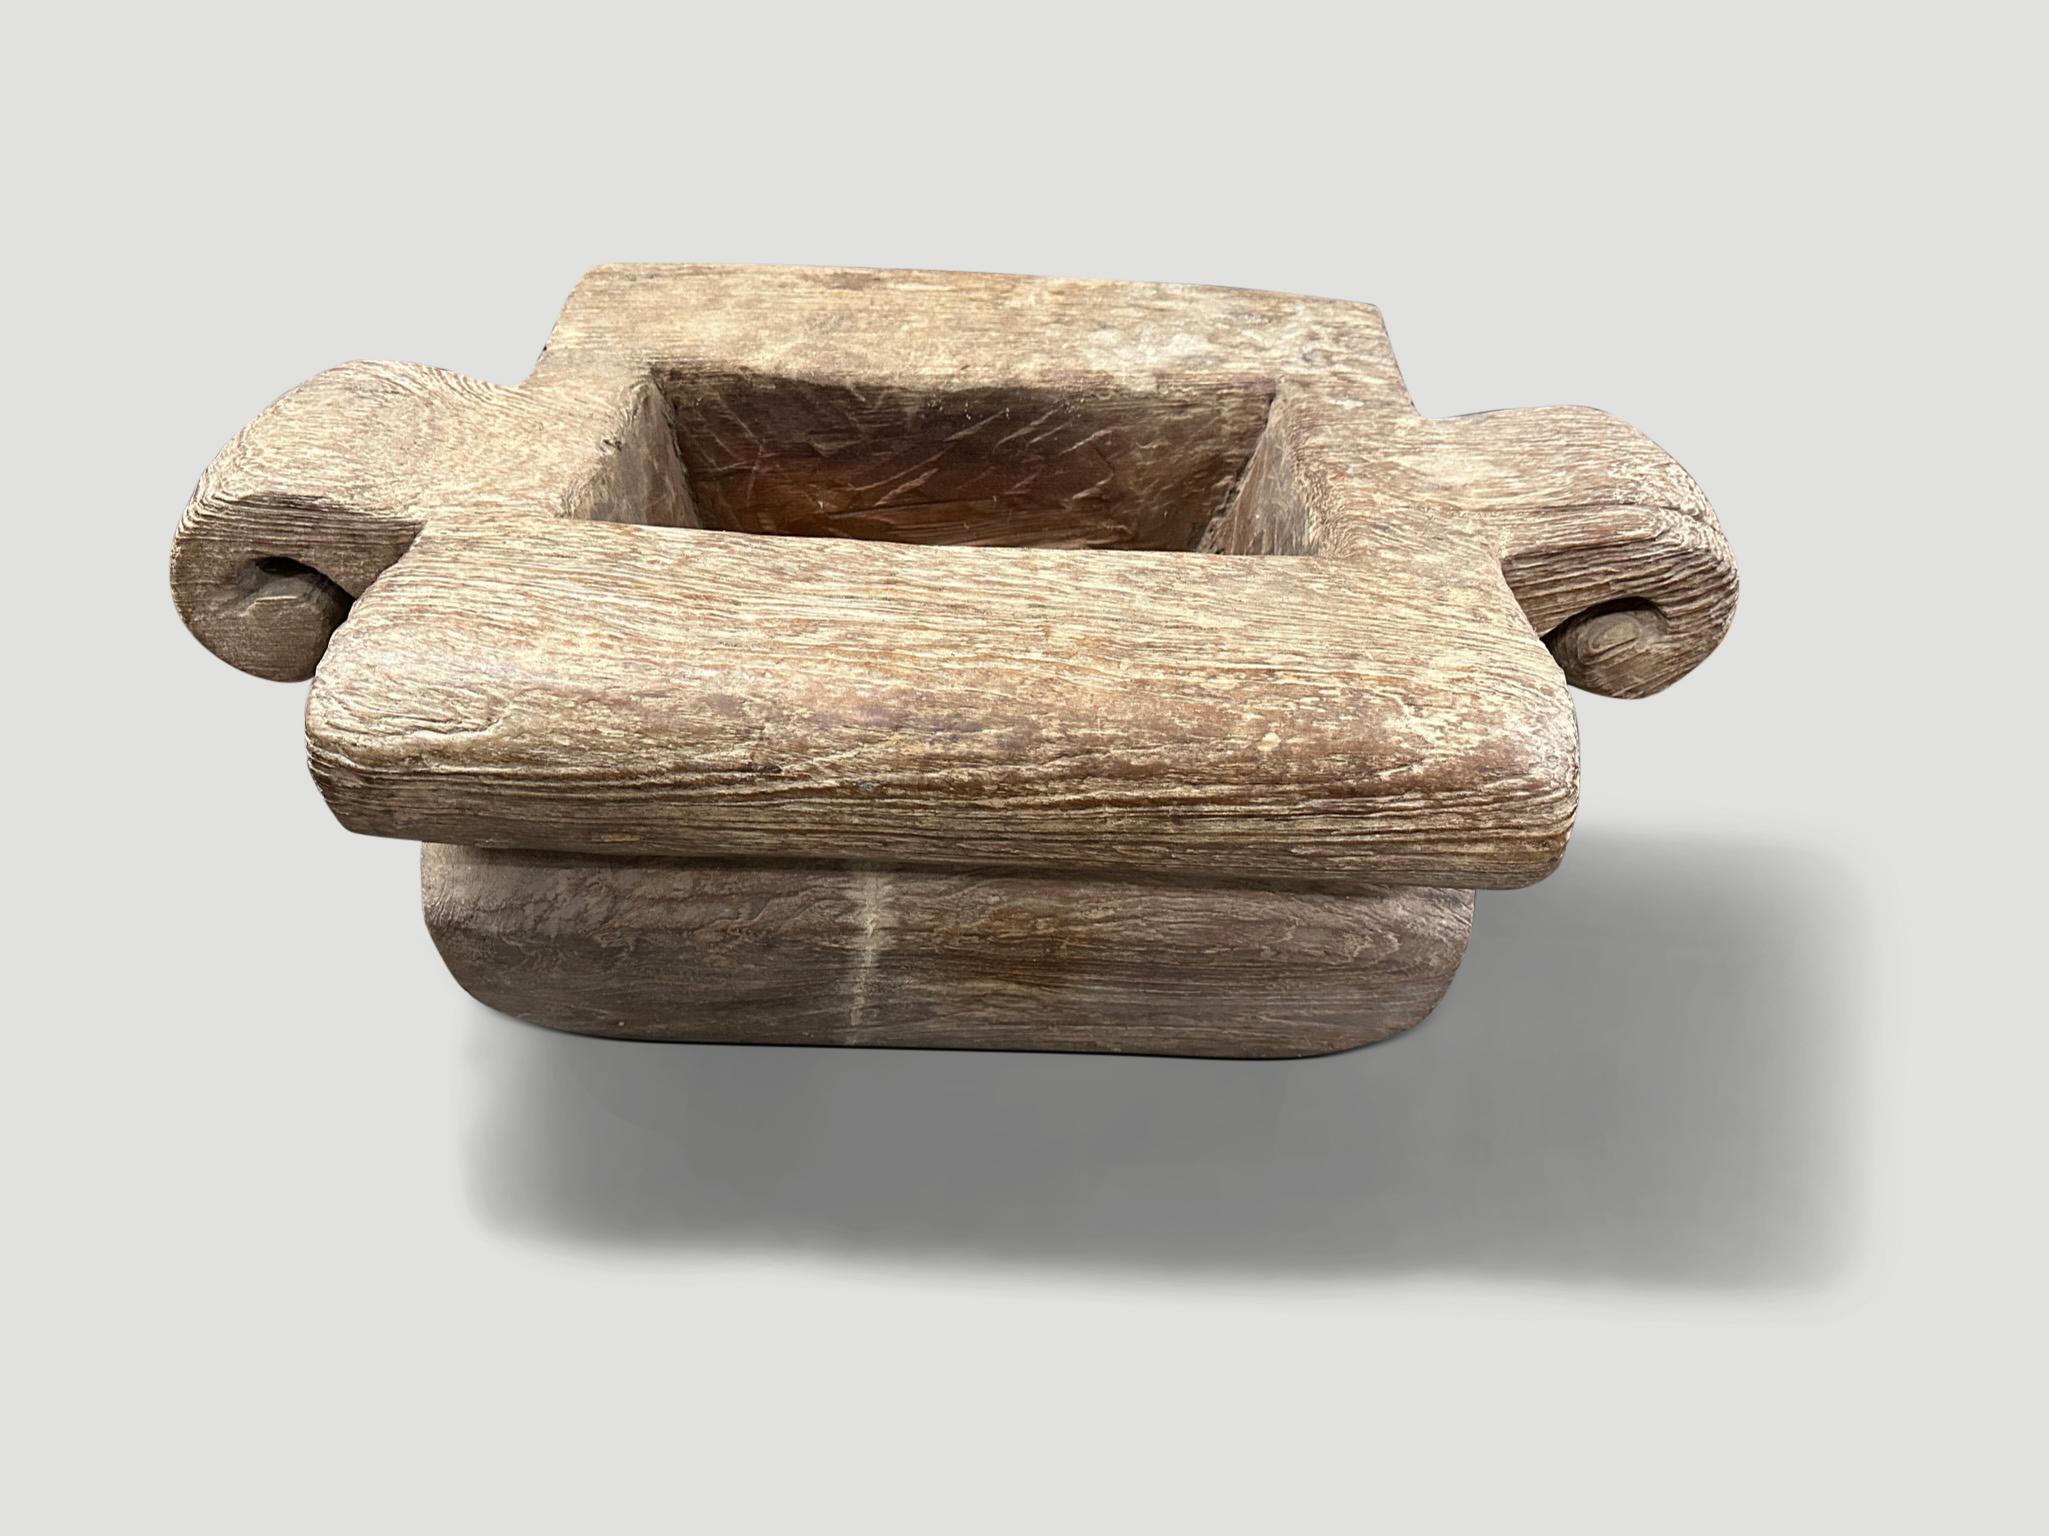 Jahrhundert altes Teakholz, das von Hand aus einem einzigen Holzblock zu diesem atemberaubend schönen Gefäß geschnitzt wurde. Ursprünglich zur Lagerung von Reis in Sumatra verwendet. Wir haben es mit einer Drahtbürste abgeschliffen und dabei die